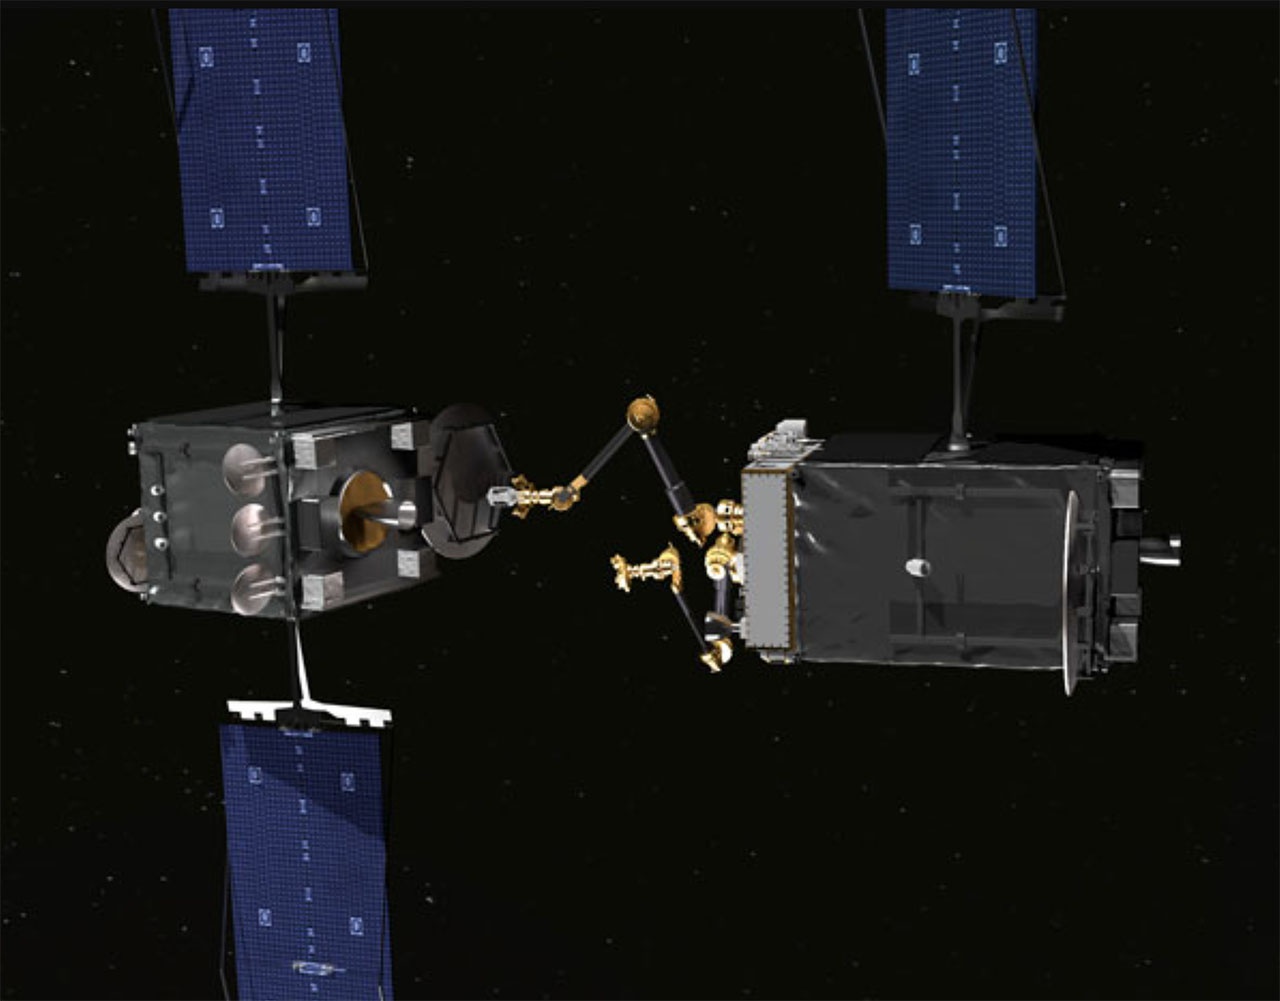 Аппарат Orbital Express разделился на две части, которые разлетелись на 400 км, а потом одна догнала вторую, состыковалась и произвела детальный осмотр камерой на «руке».